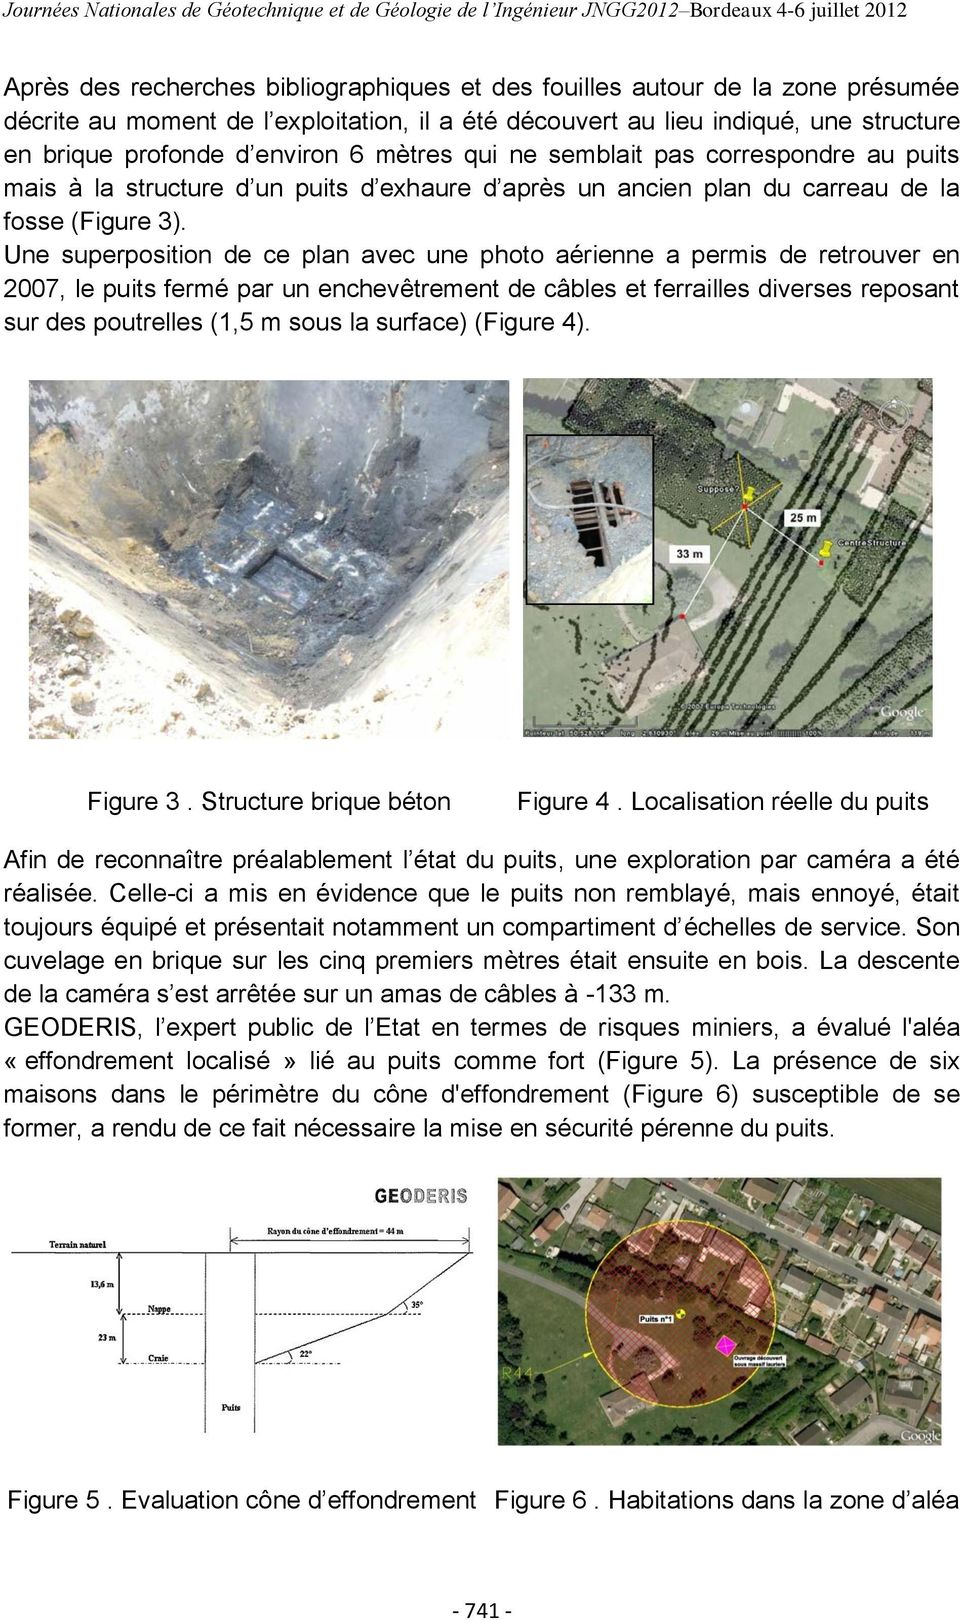 Une superposition de ce plan avec une photo aérienne a permis de retrouver en 2007, le puits fermé par un enchevêtrement de câbles et ferrailles diverses reposant sur des poutrelles (1,5 m sous la